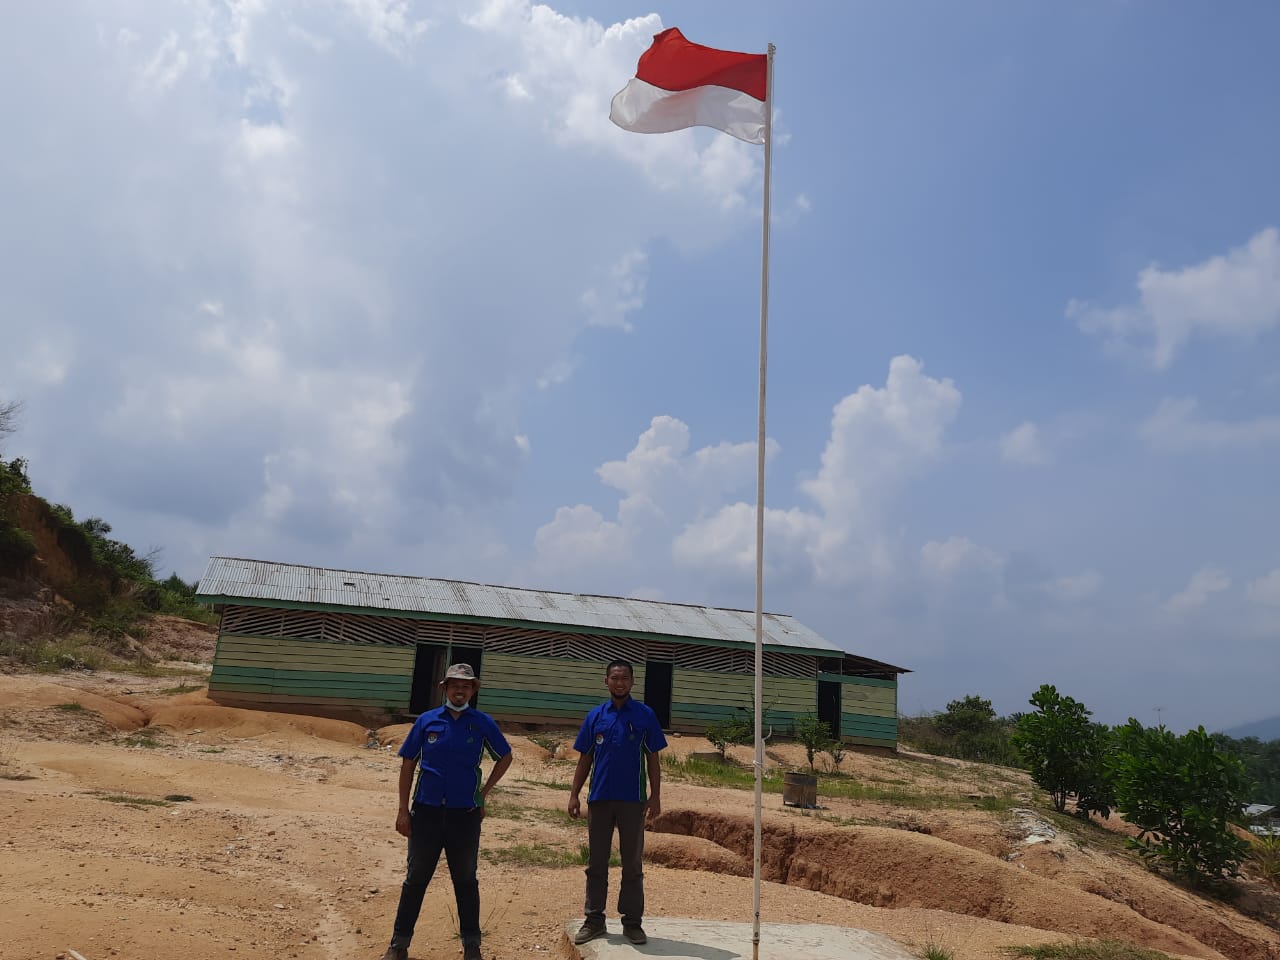 Sempat di Kunjungi PT SSR Inhu, Sekolah SD Kelas Jauh Desa Pesajian Akan Dibangun